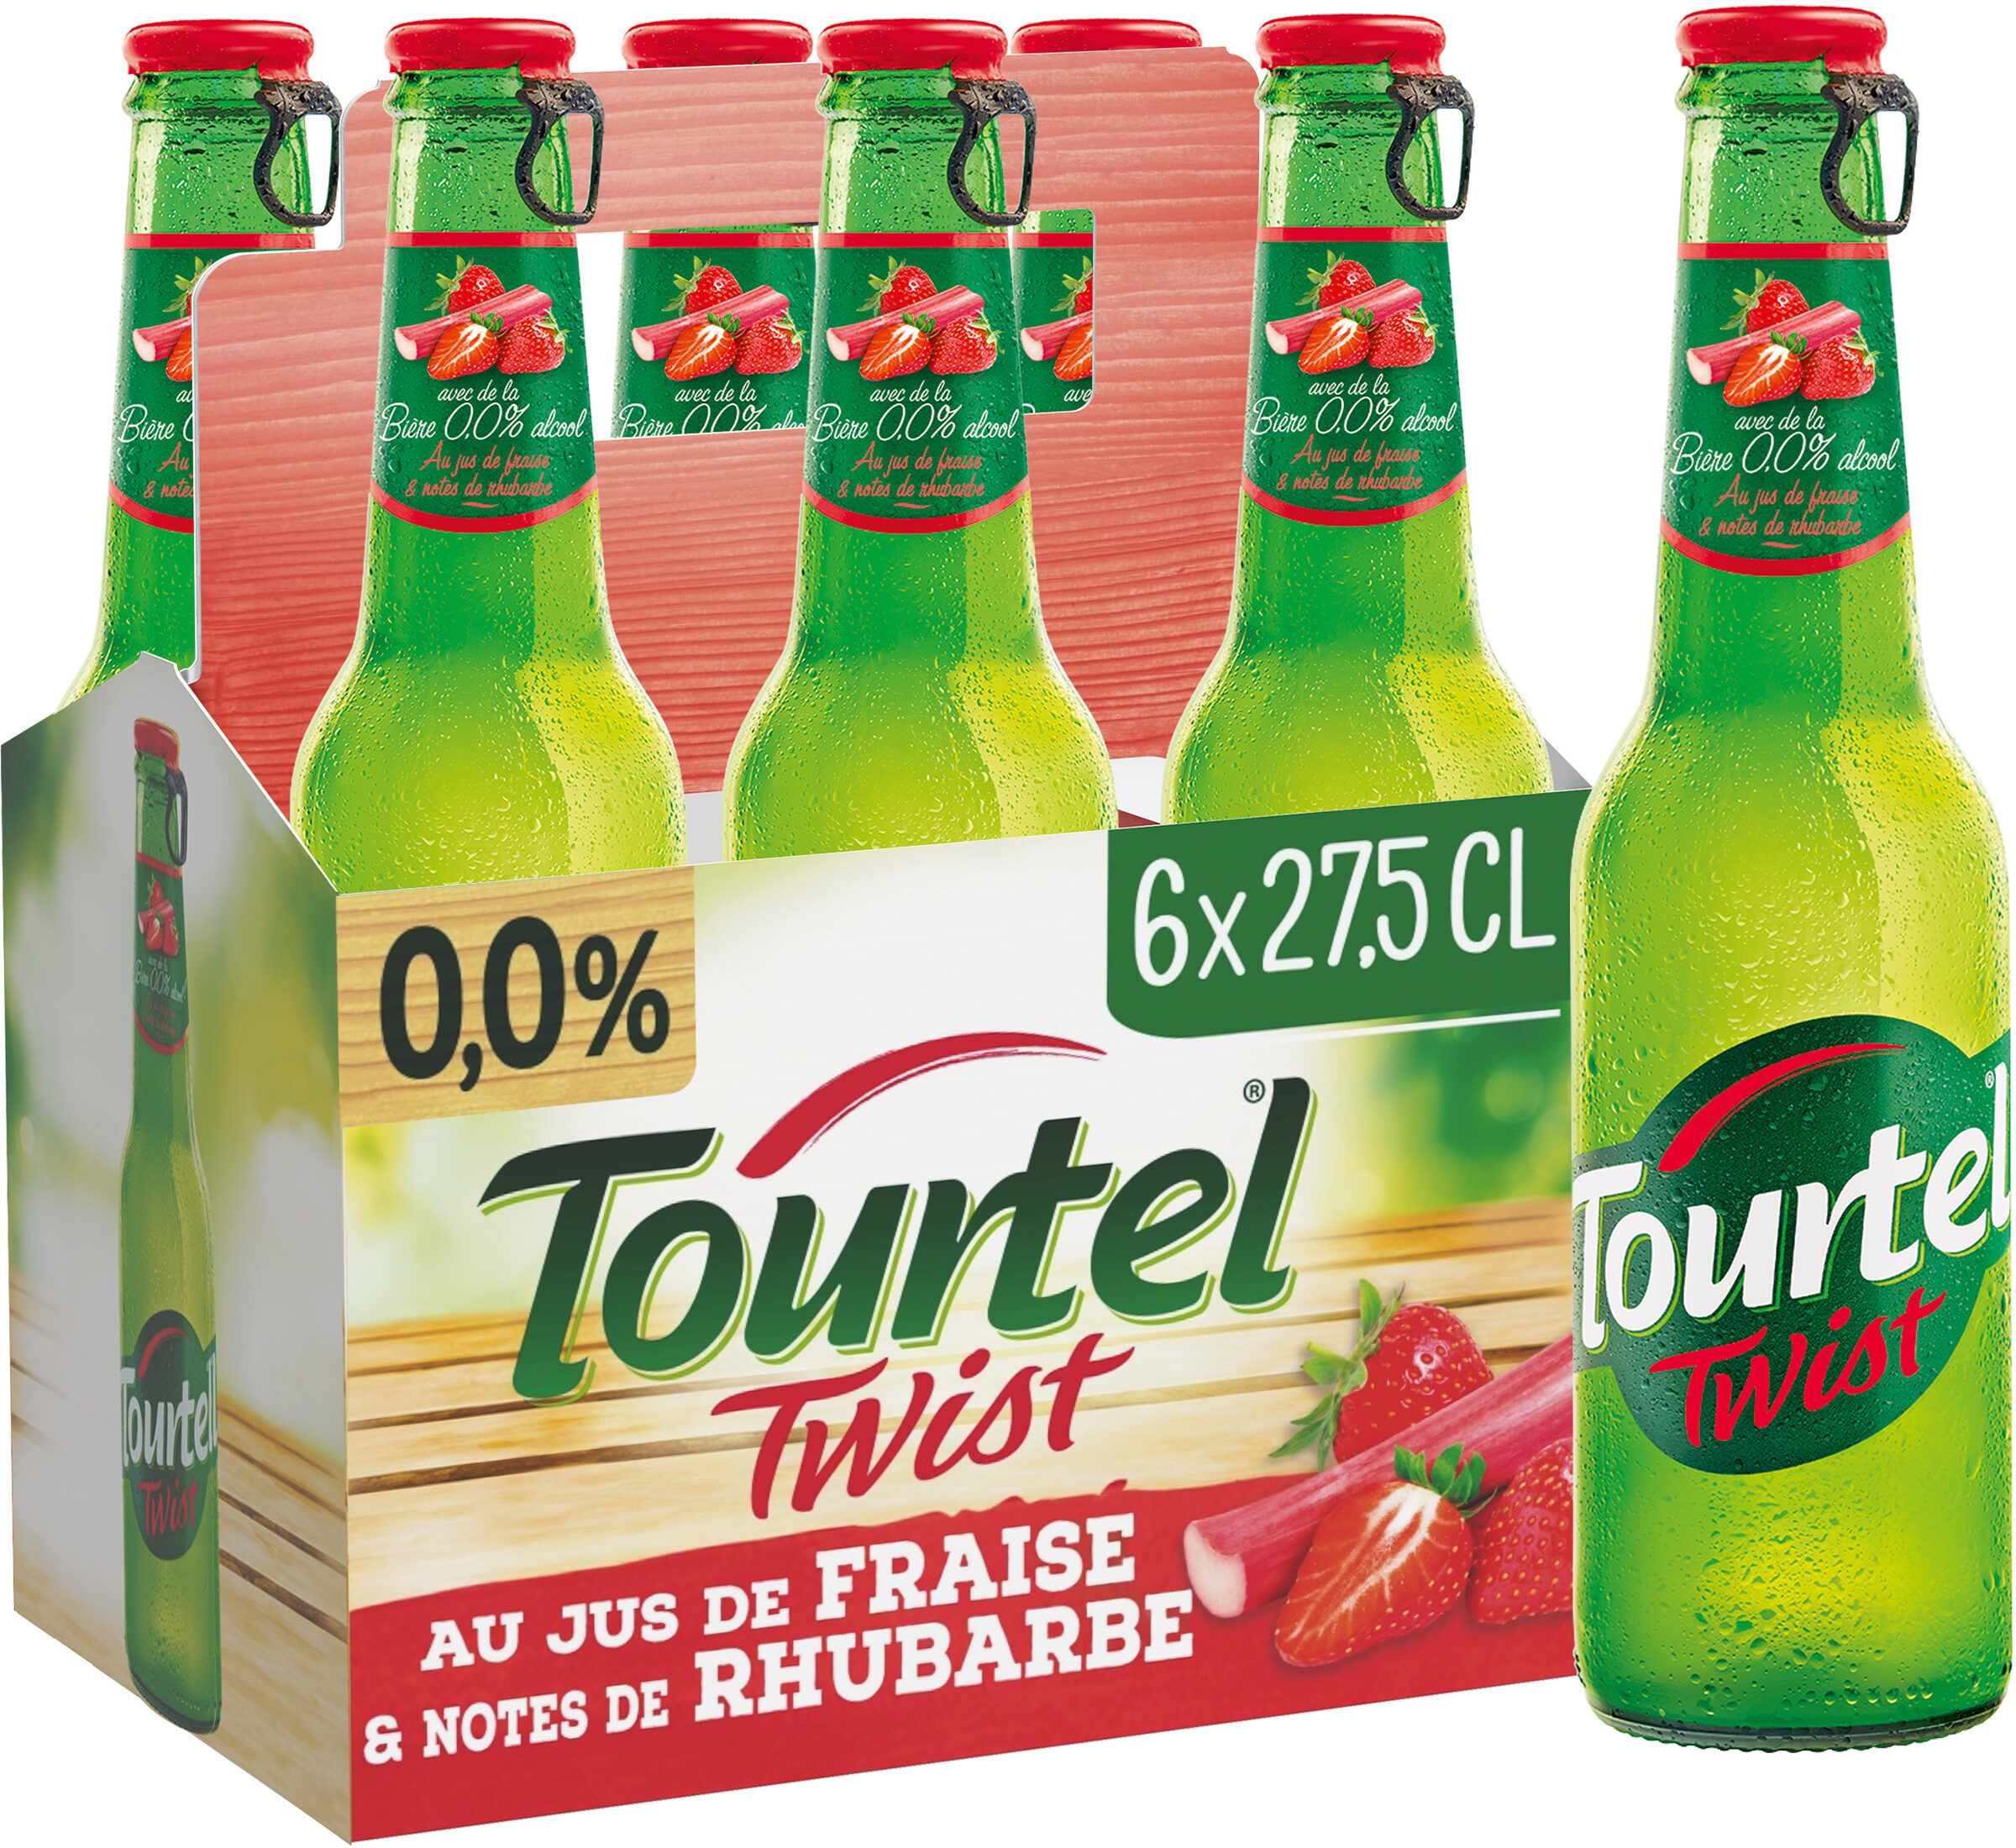 Tourtel 6X27,5CL TOURTEL TWIST FRAISE RHUBA 0.0 DEGRE ALCOOL - Product - fr